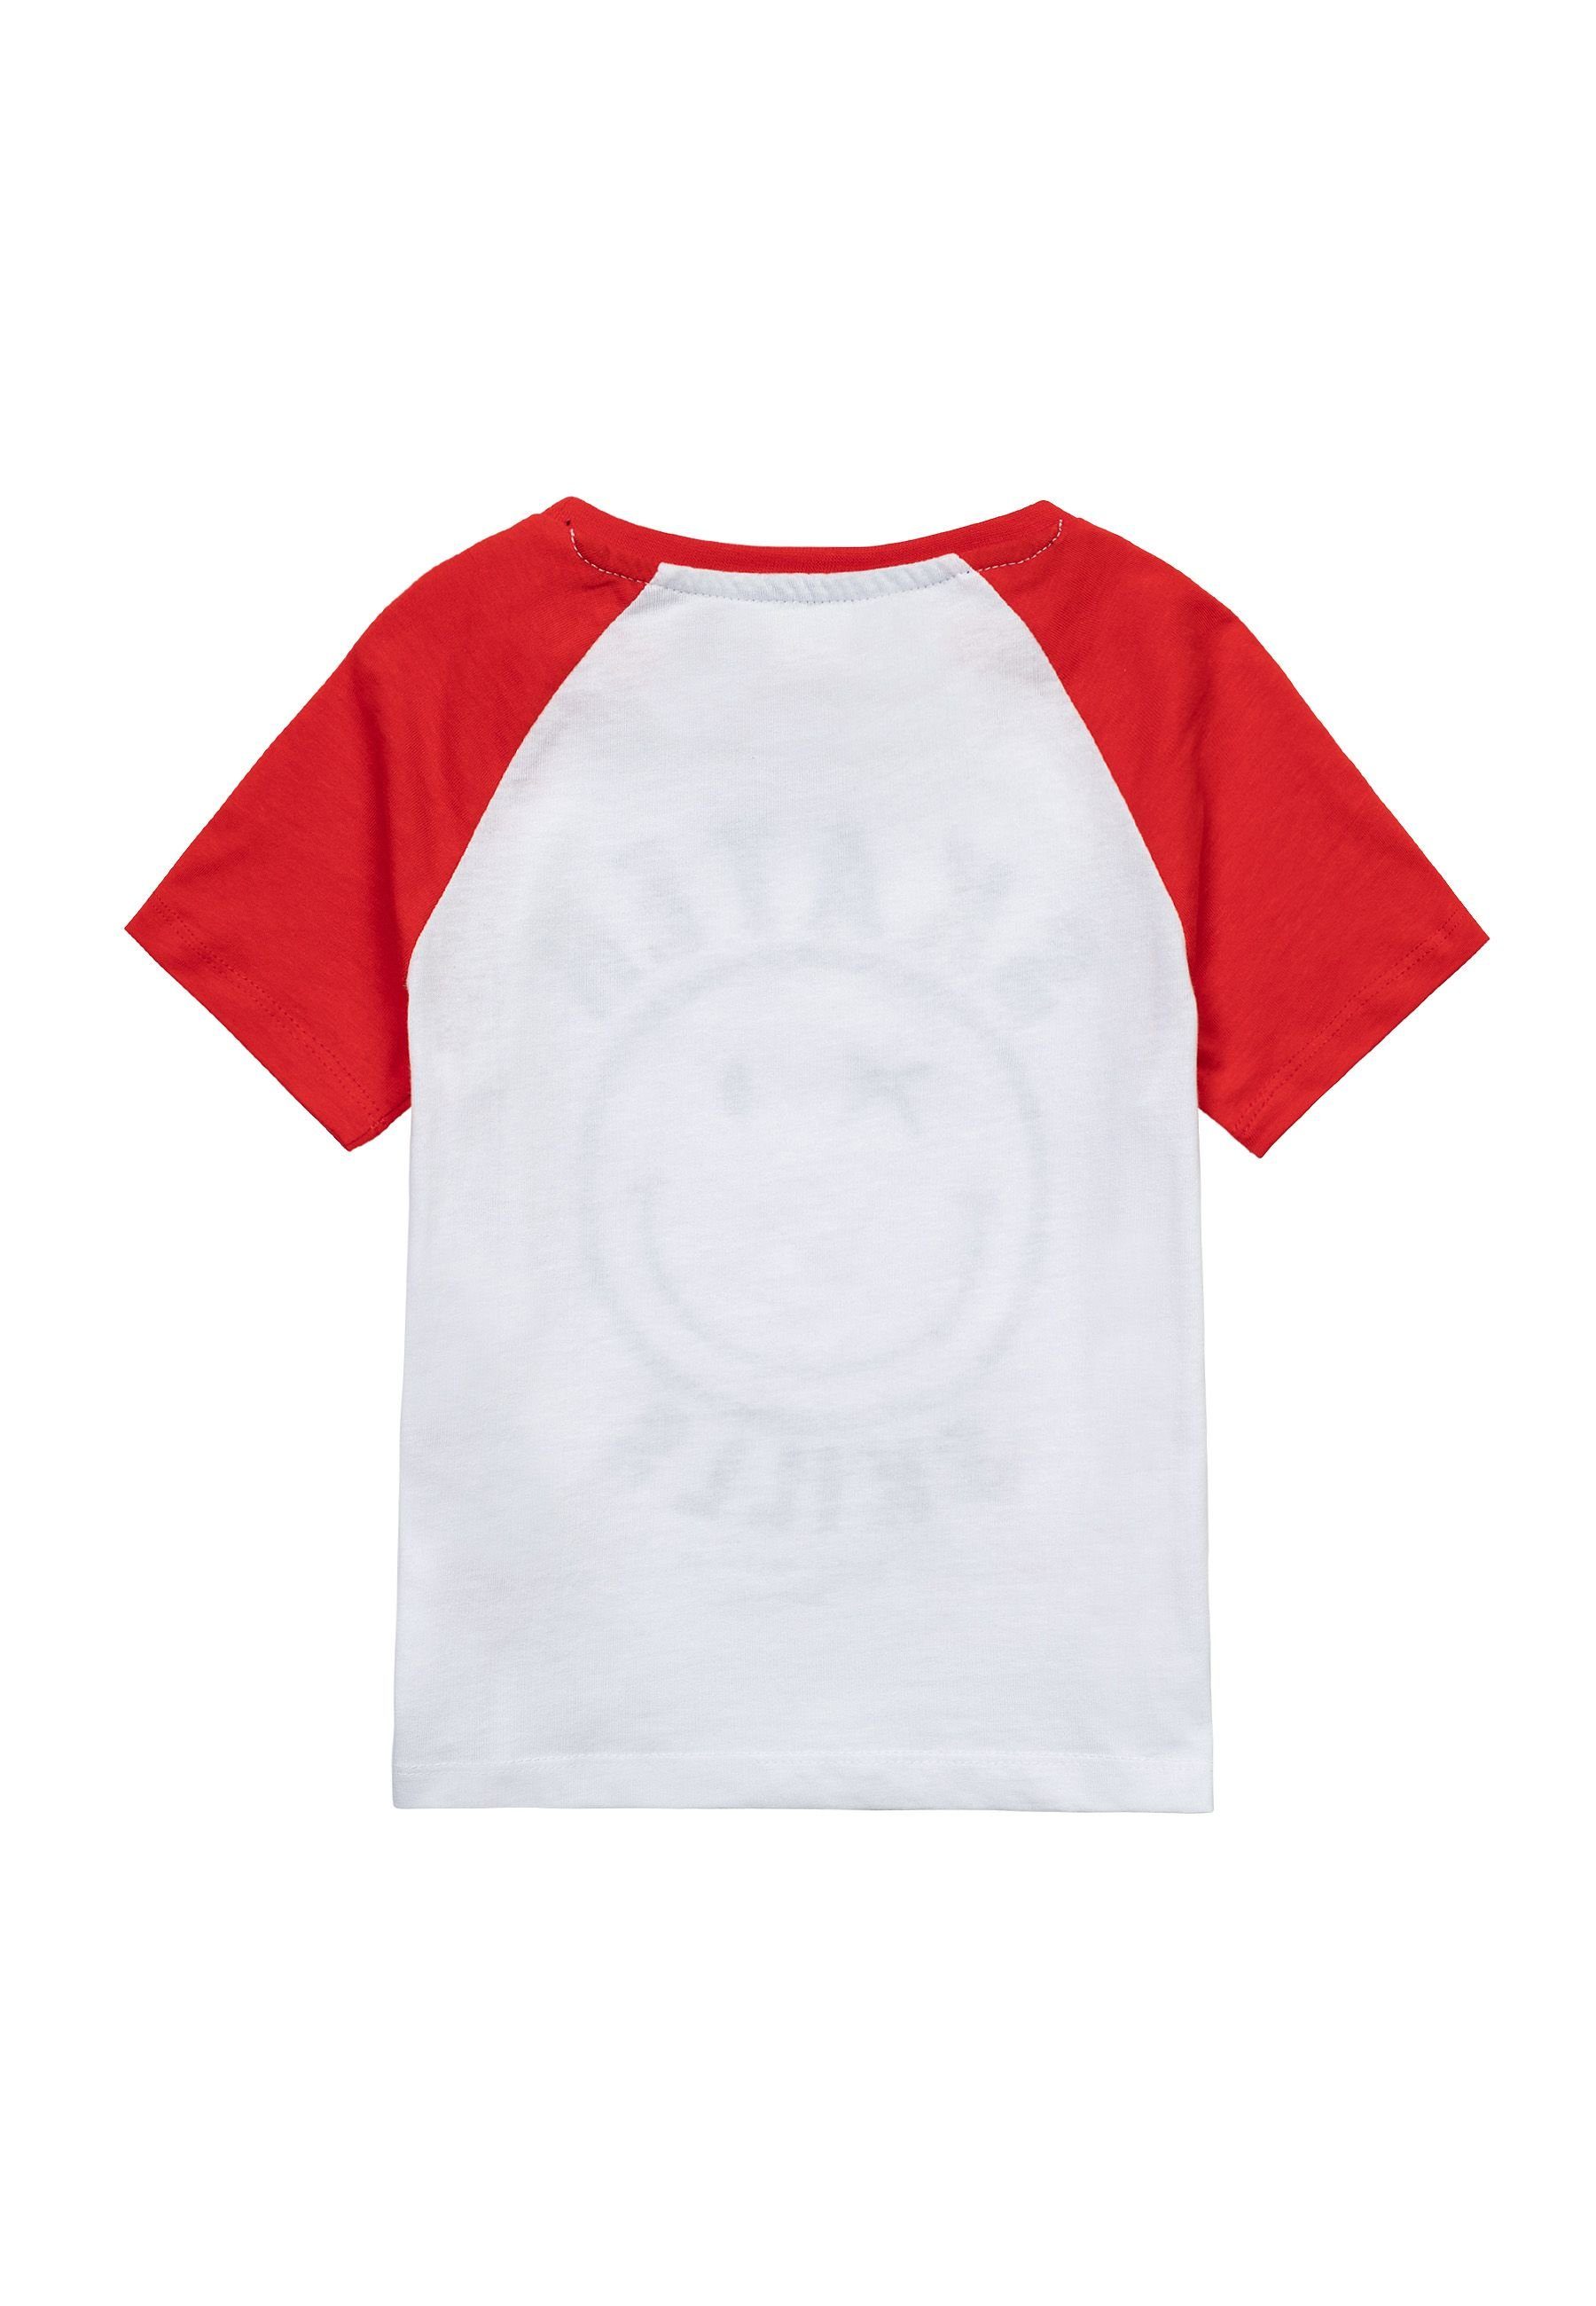 MINOTI T-Shirt Sommer T-Shirt (3y-14y) bunten Ärmeln mit Weiß